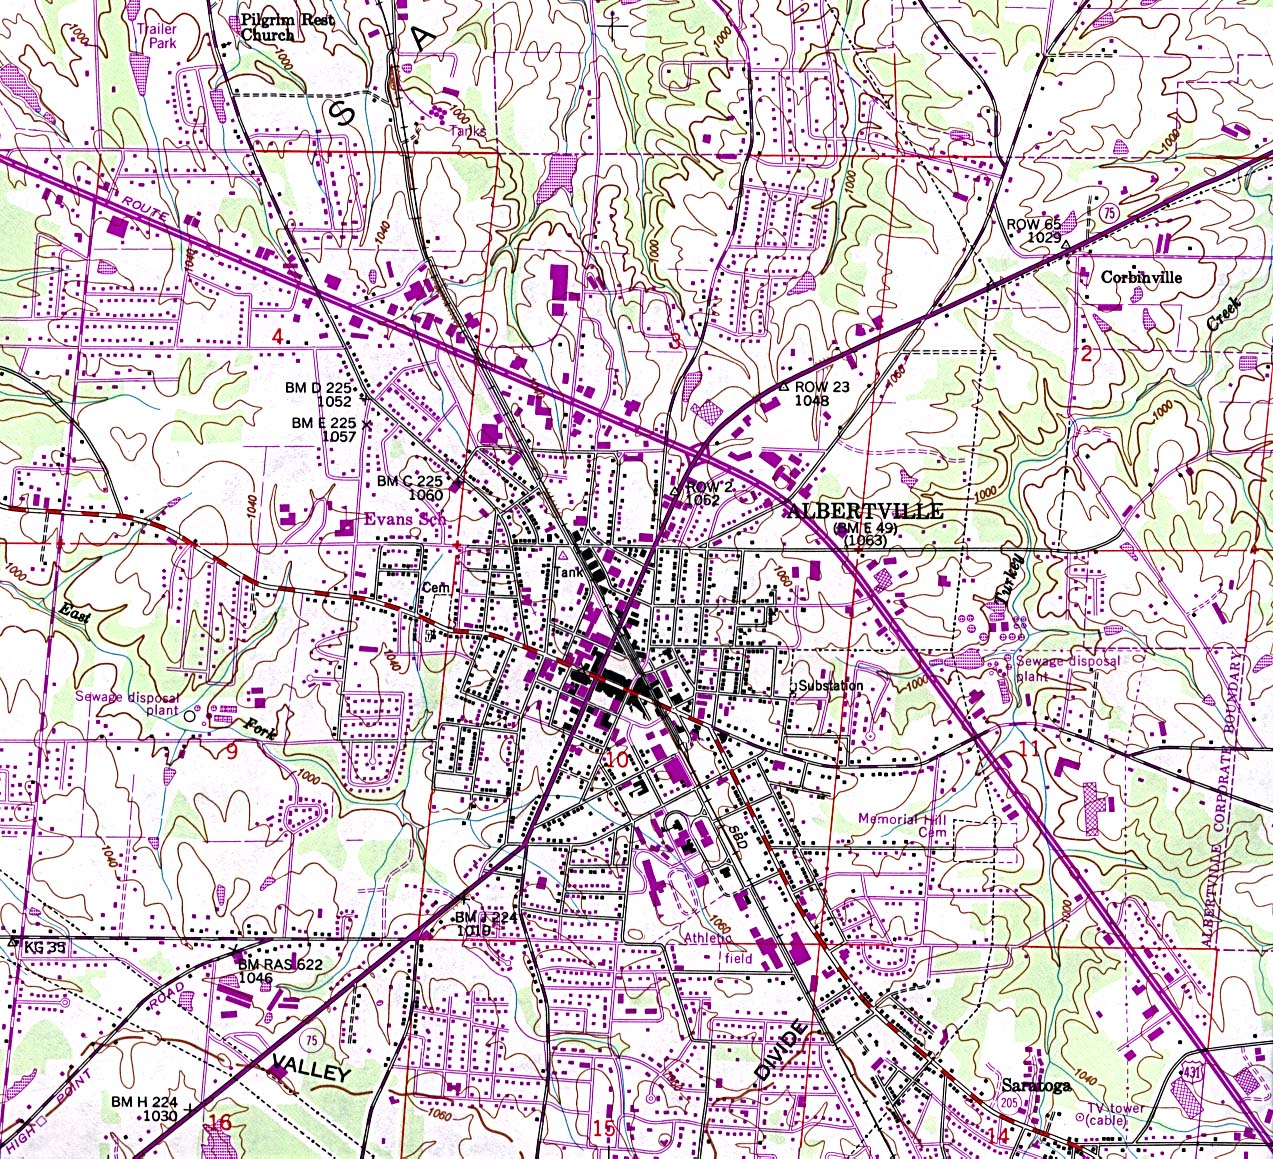 Mapa Topográfico de la Ciudad de Albertville, Alabama, Estados Unidos